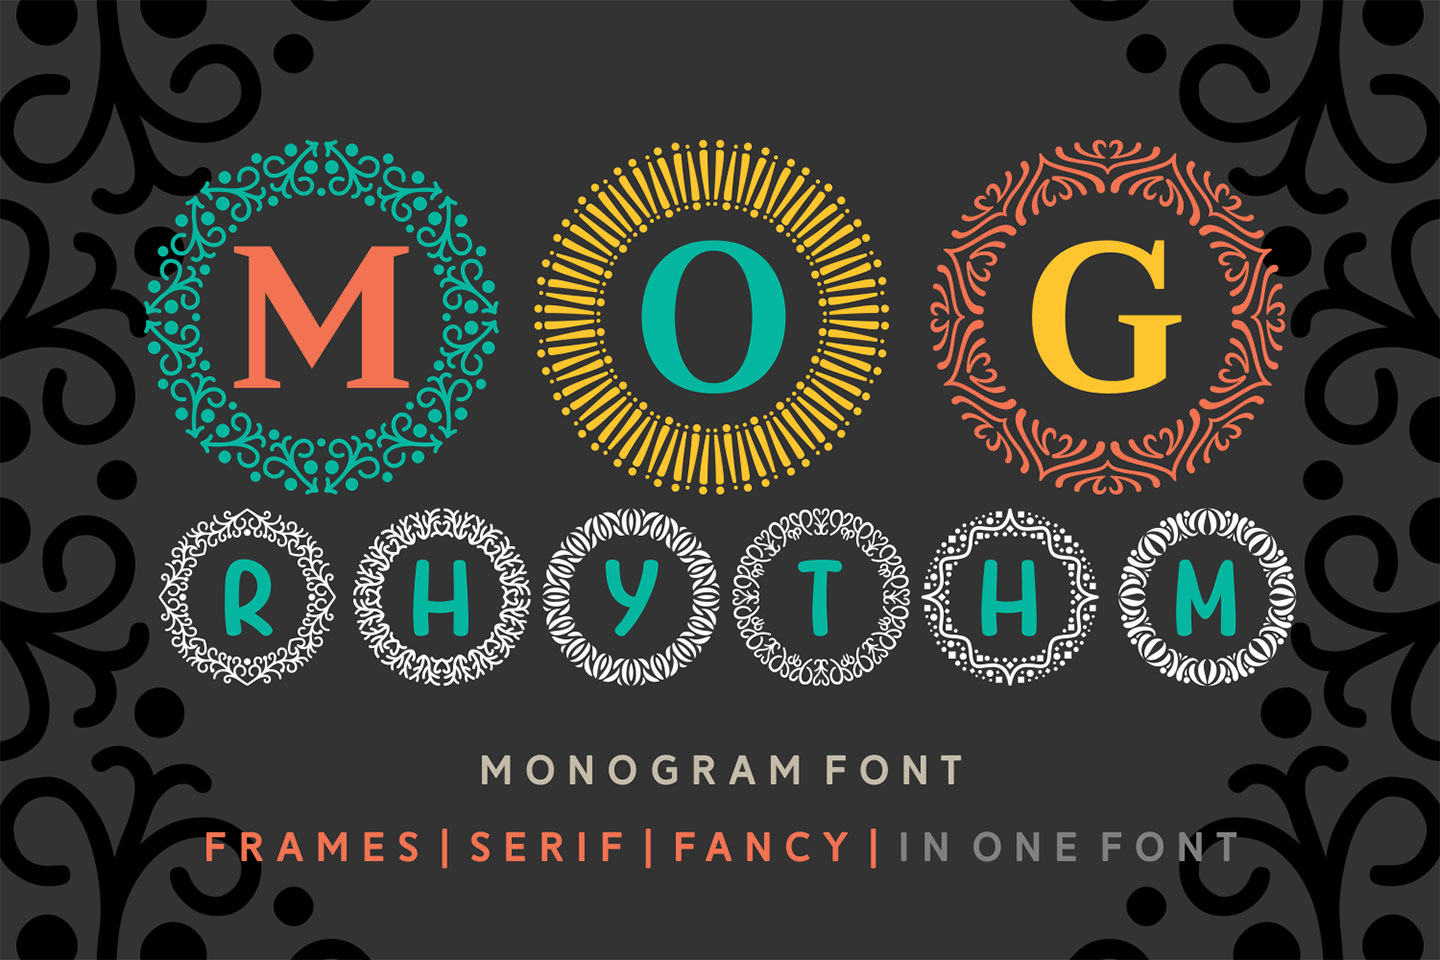 MOG rhythm Font